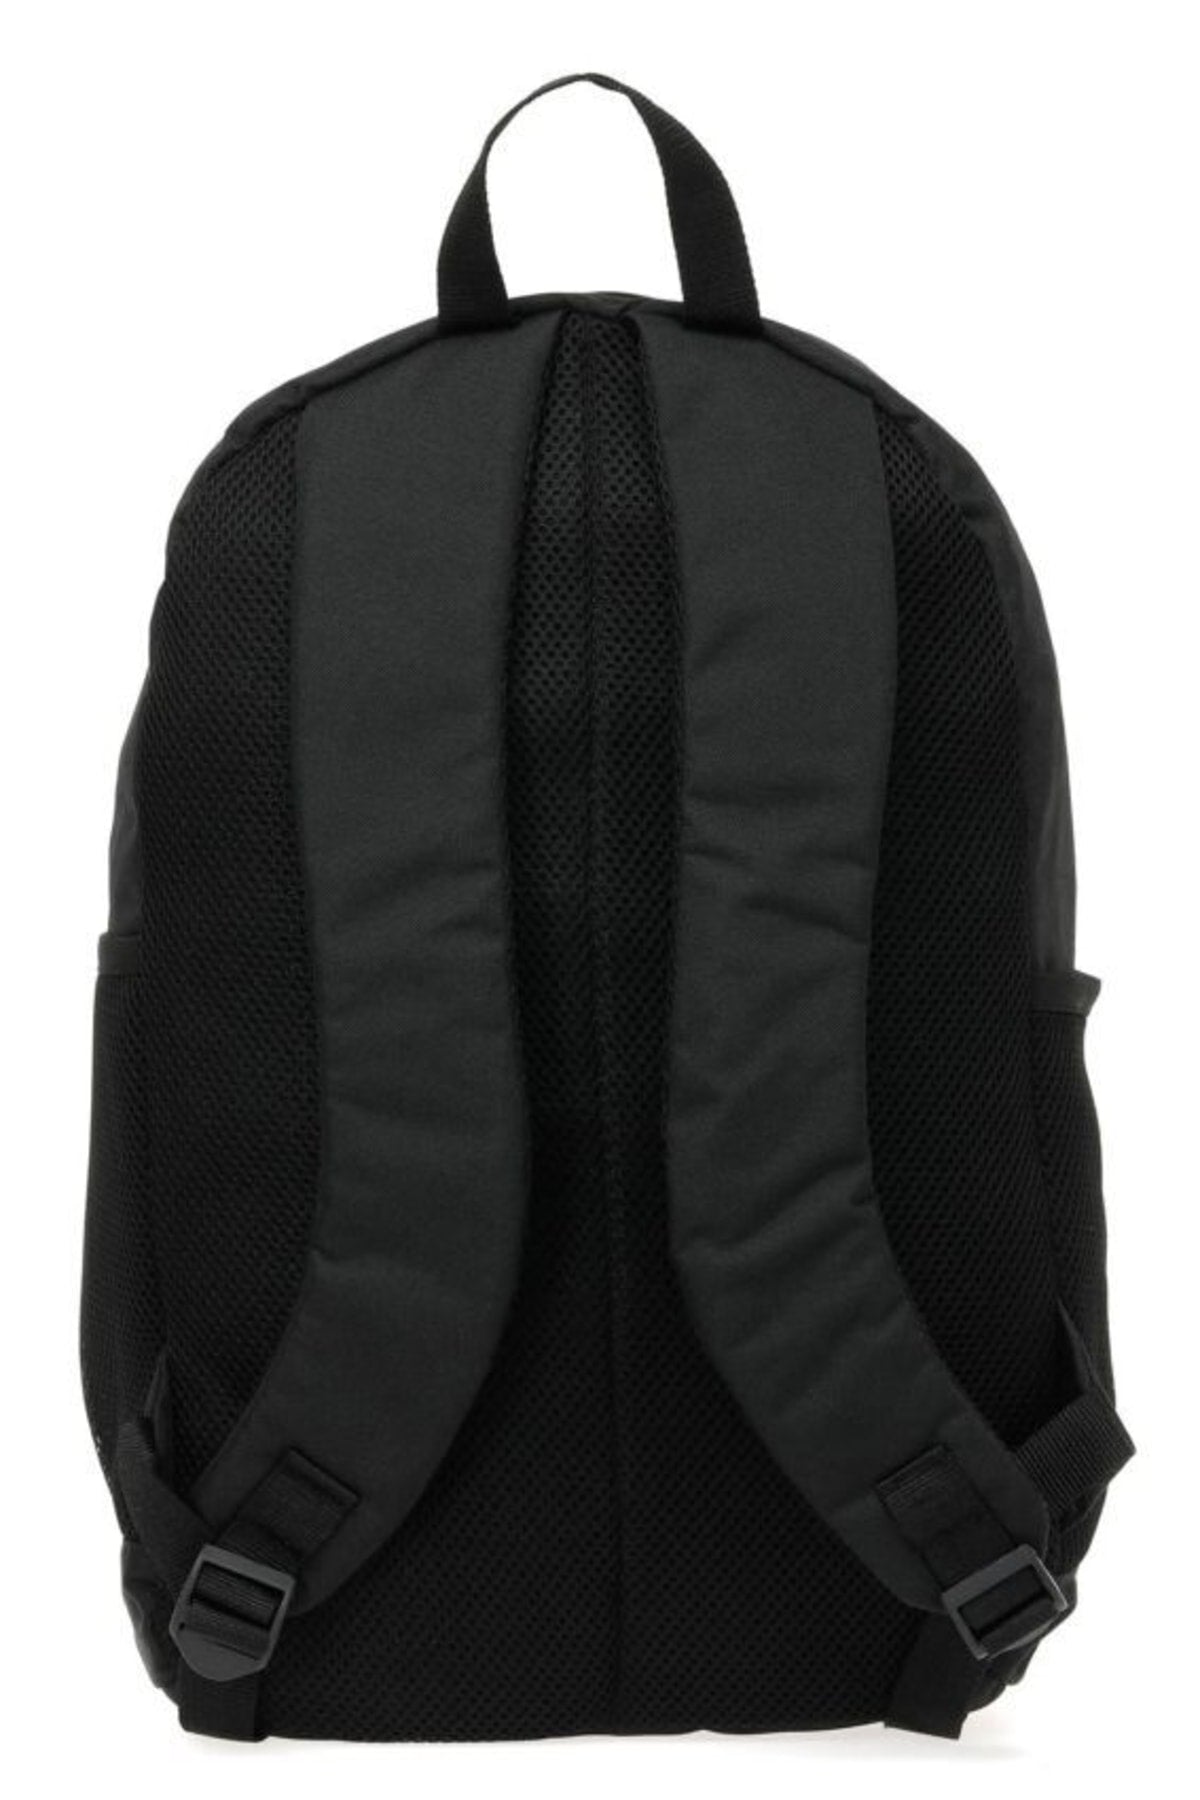 Oliver 2pr Black Unisex Backpack Ct185